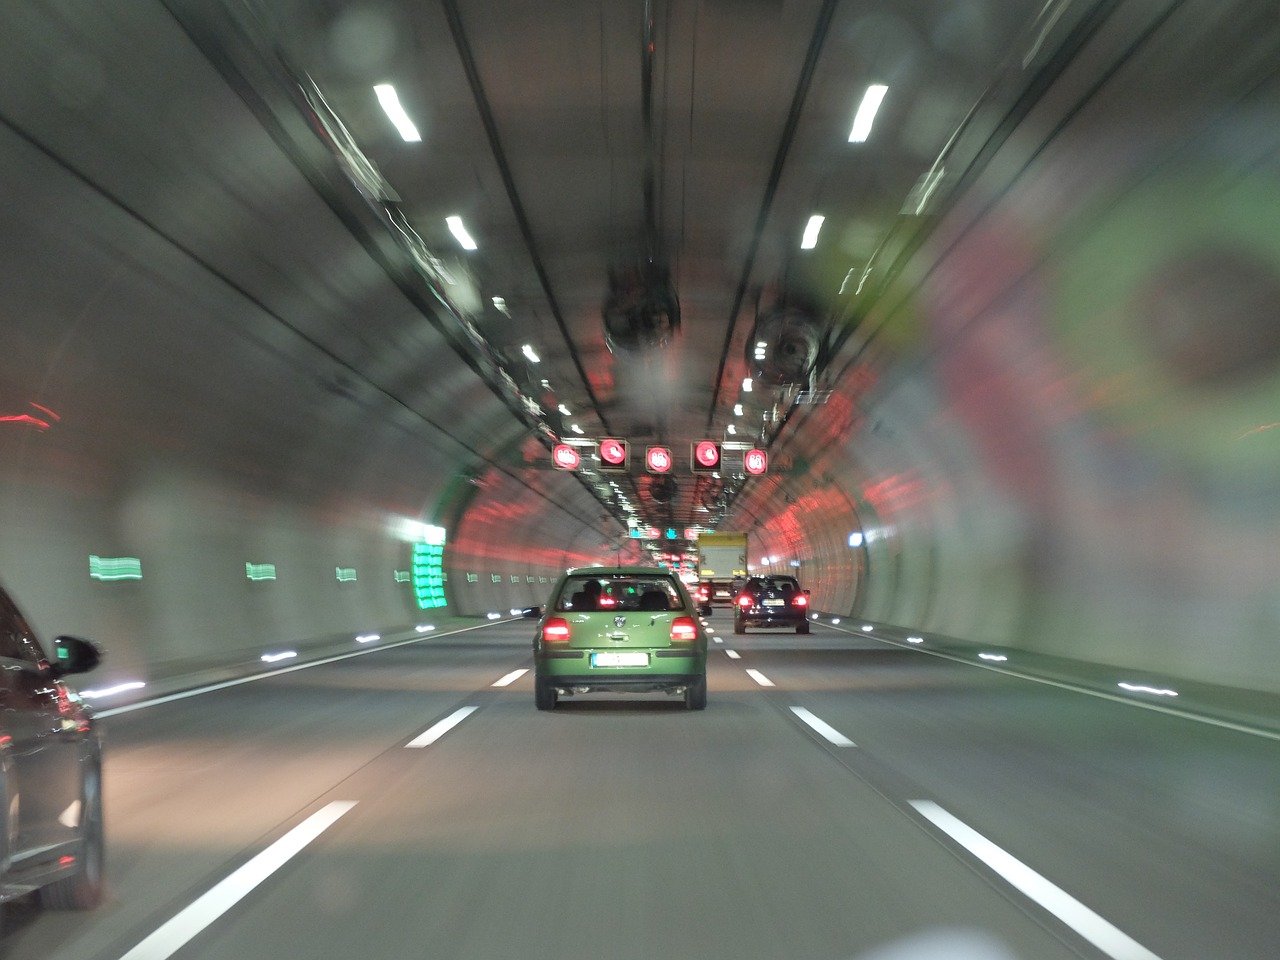 Ilustračný obrázok - osobné vozidlá prechádzajúce tunelom.